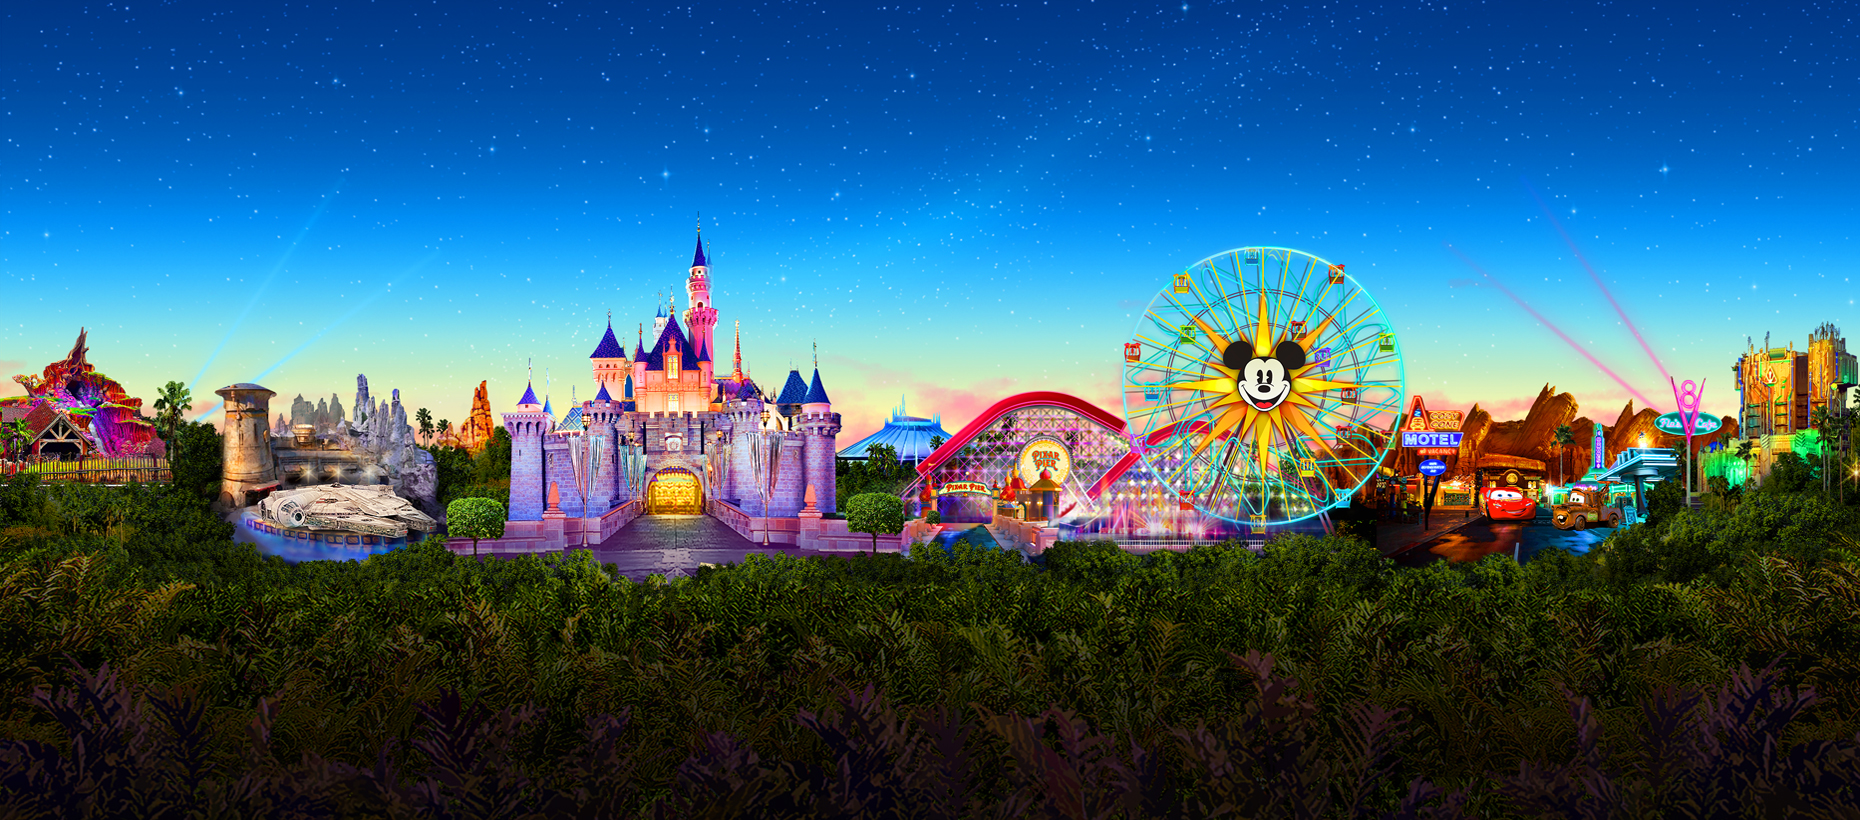 Disneyland Theme Park Tickets in Anaheim, California | Disneyland ...